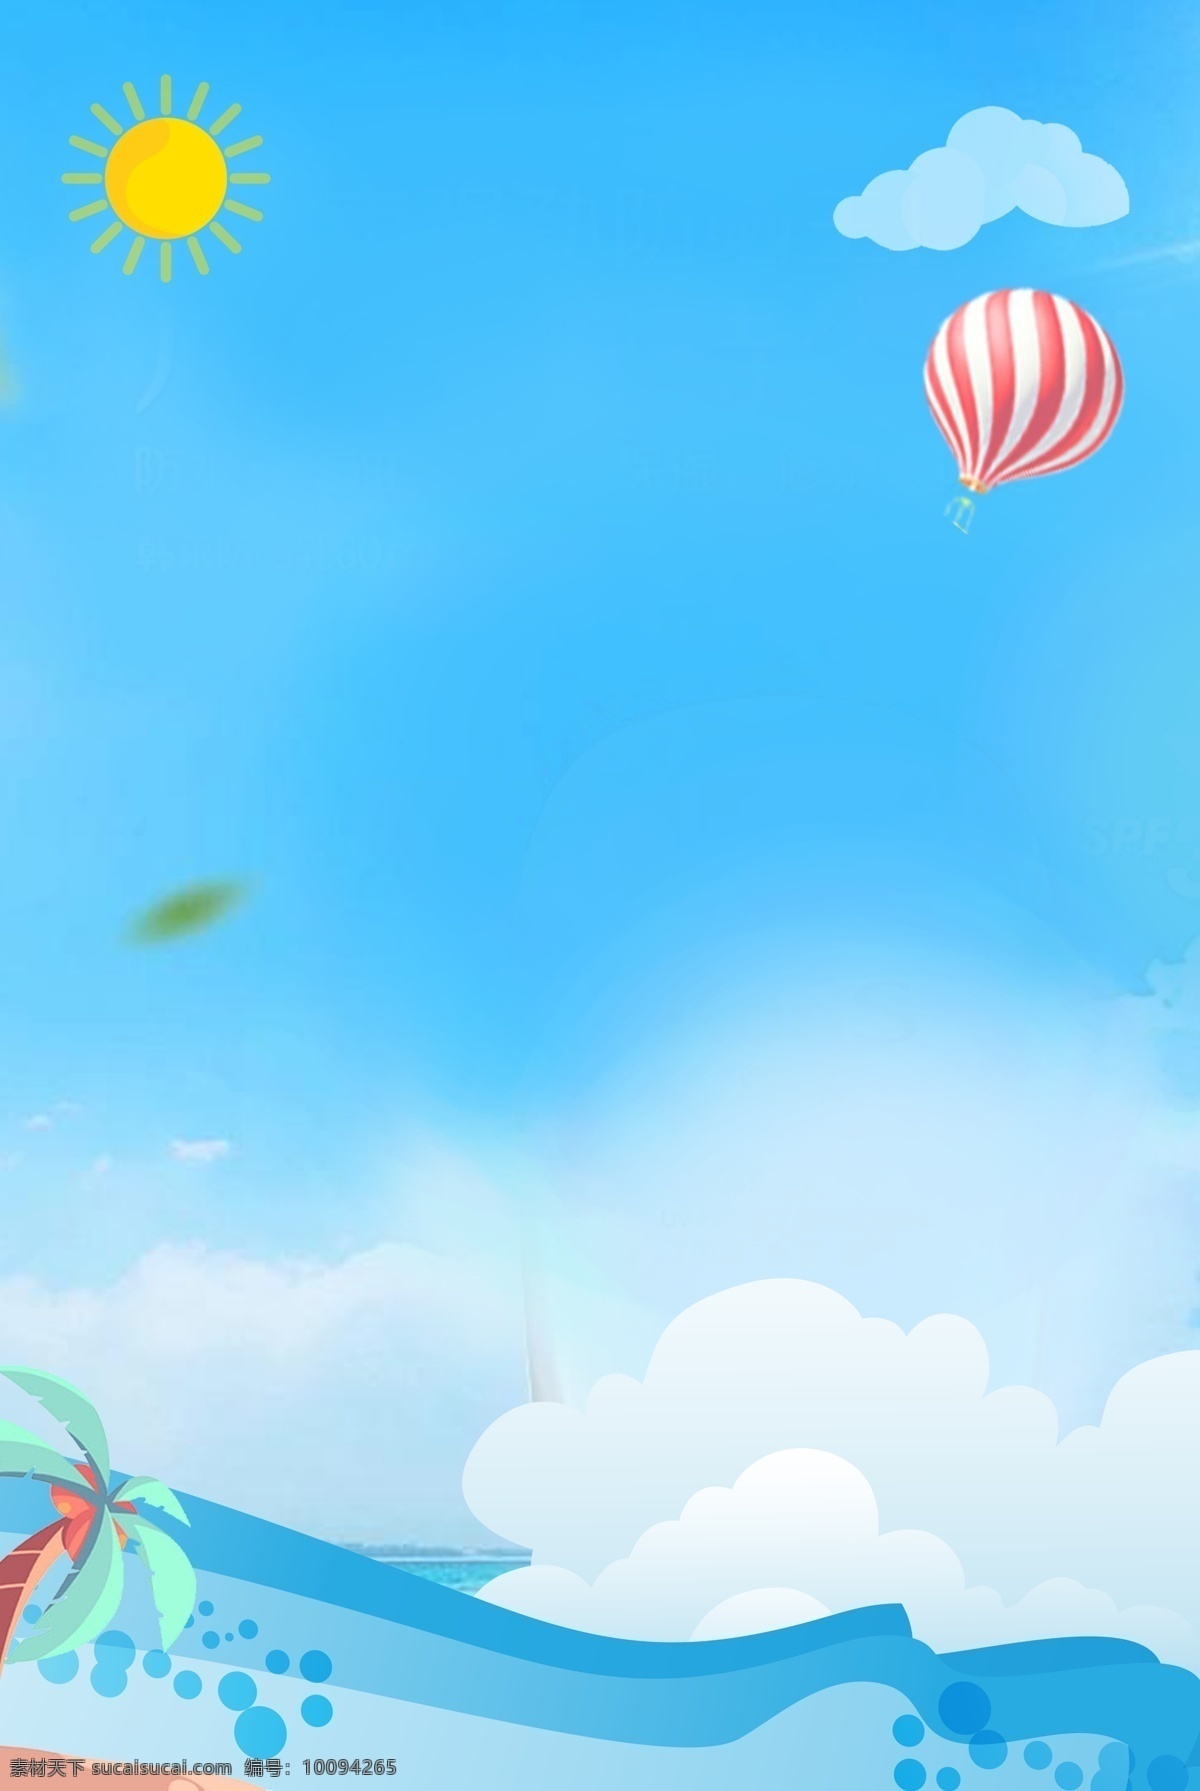 小 清新 海浪 热气球 海报 小清新 太阳 白云 蓝天 椰子树 叶子